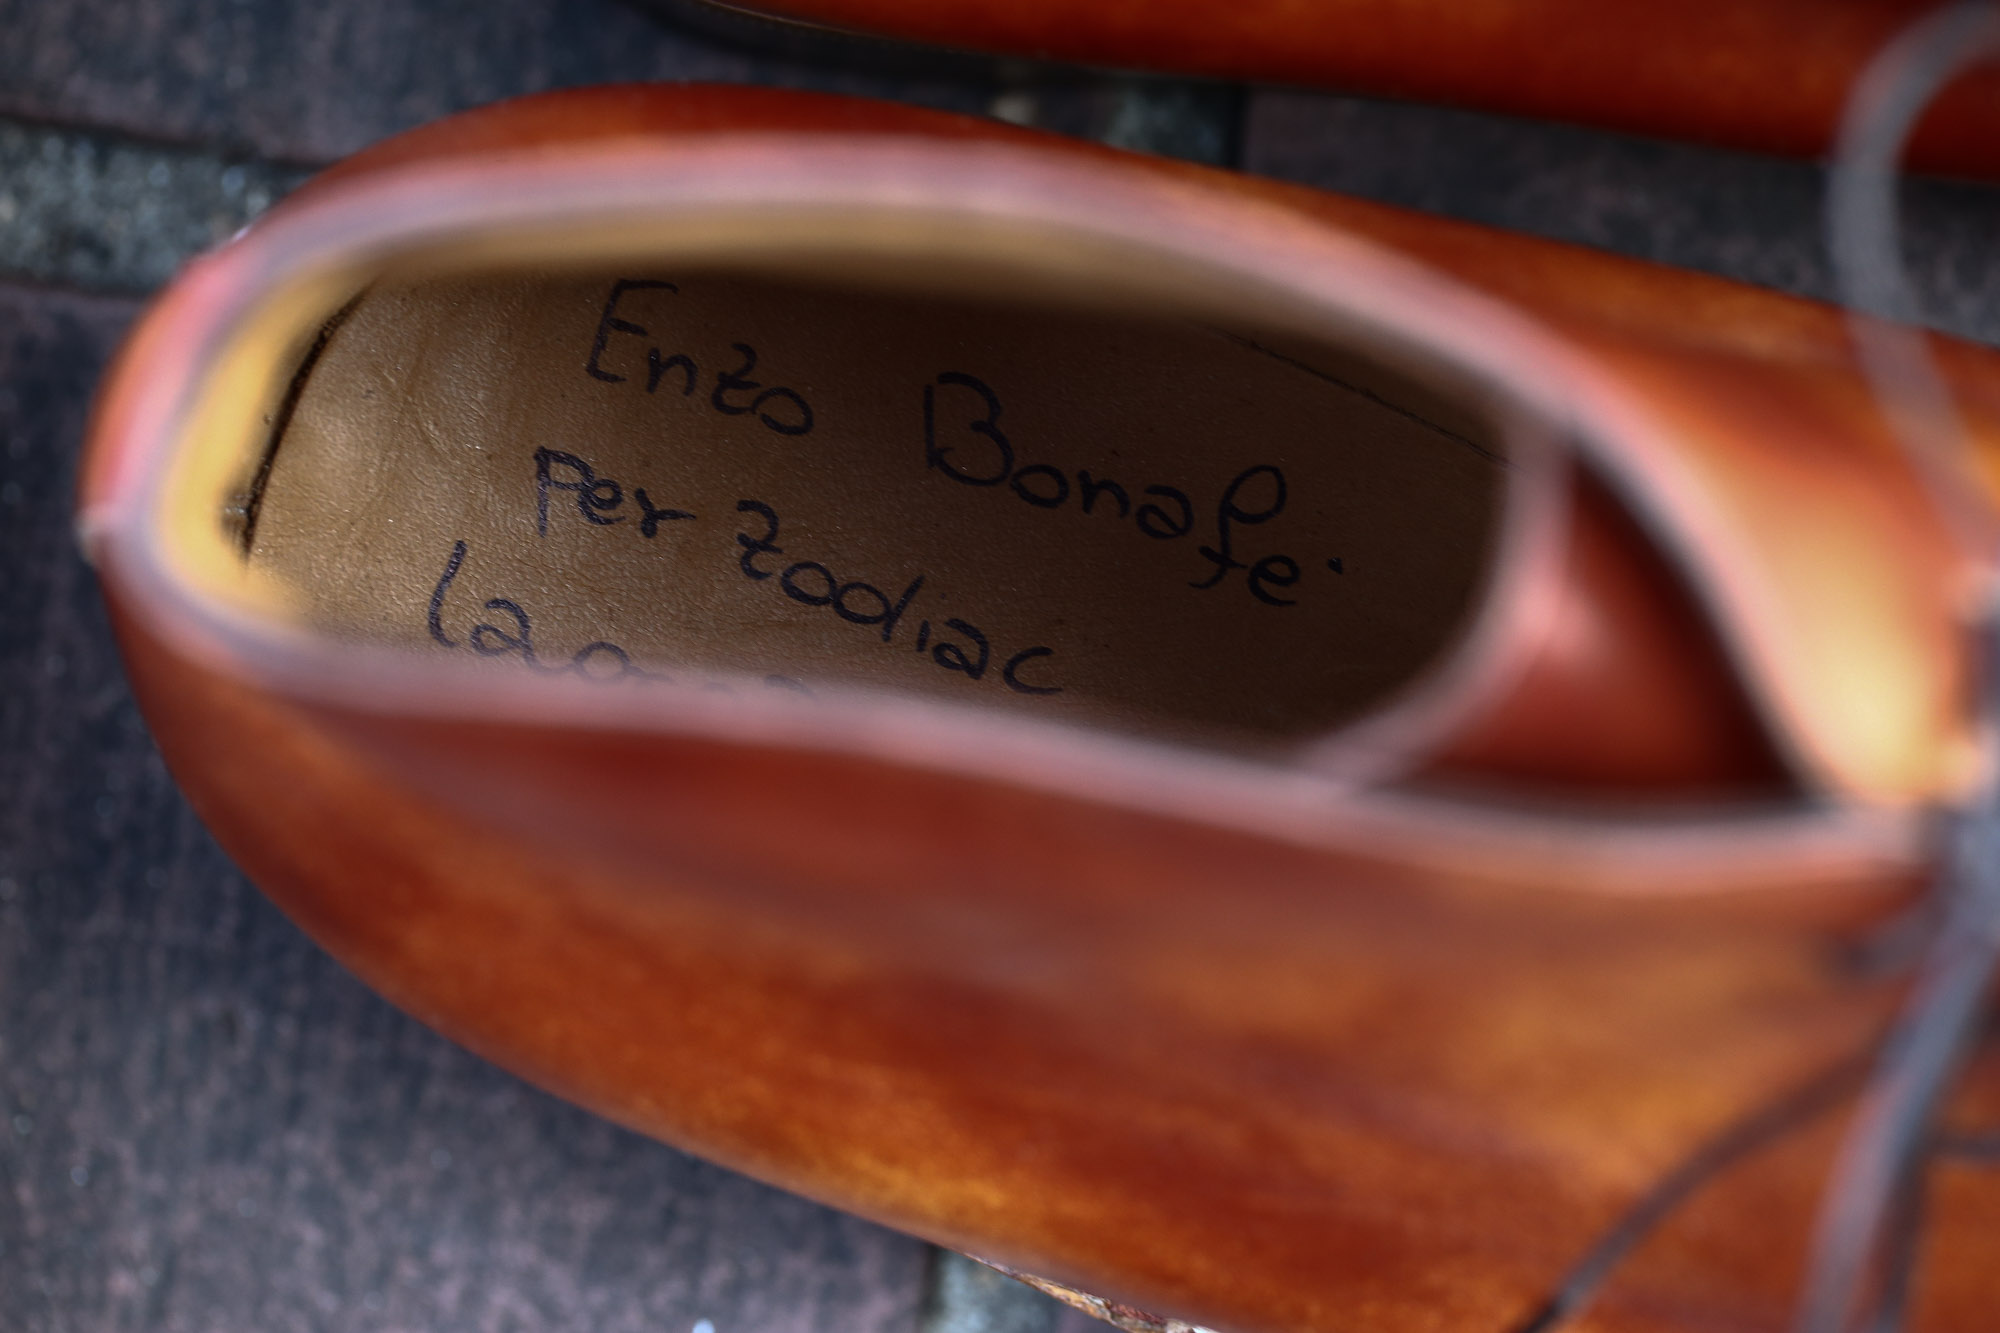 ENZO BONAFE (エンツォボナフェ) ART.3722 Chukka boots チャッカブーツ Bonaudo Museum Calf Leather ボナウド社 ミュージアムカーフレザー ノルベジェーゼ製法 レザーソール チャッカブーツ NEW GOLD (ニューゴールド) made in Italy(イタリア製) 2017 春夏新作 愛知 名古屋 Alto e Diritto アルト エ デリット エンツォボナフェ ボナフェ ベネチアンクリーム JOHN LOBB ジョンロブ CHURCH’S チャーチ JOSEPH CHEANEY ジョセフチーニー CORTHAY コルテ ALFRED SARGENT アルフレッドサージェント CROCKETT&JONES クロケットジョーンズ F.LLI GIACOMETTI フラテッリジャコメッティ ENZO BONAFE エンツォボナフェ BETTANIN&VENTURI ベッタニンヴェントゥーリ JALAN SRIWIJAYA ジャランスリウァヤ J.W.WESTON ジェイエムウエストン SANTONI サントーニ SERGIO ROSSI セルジオロッシ CARMINA カルミナ